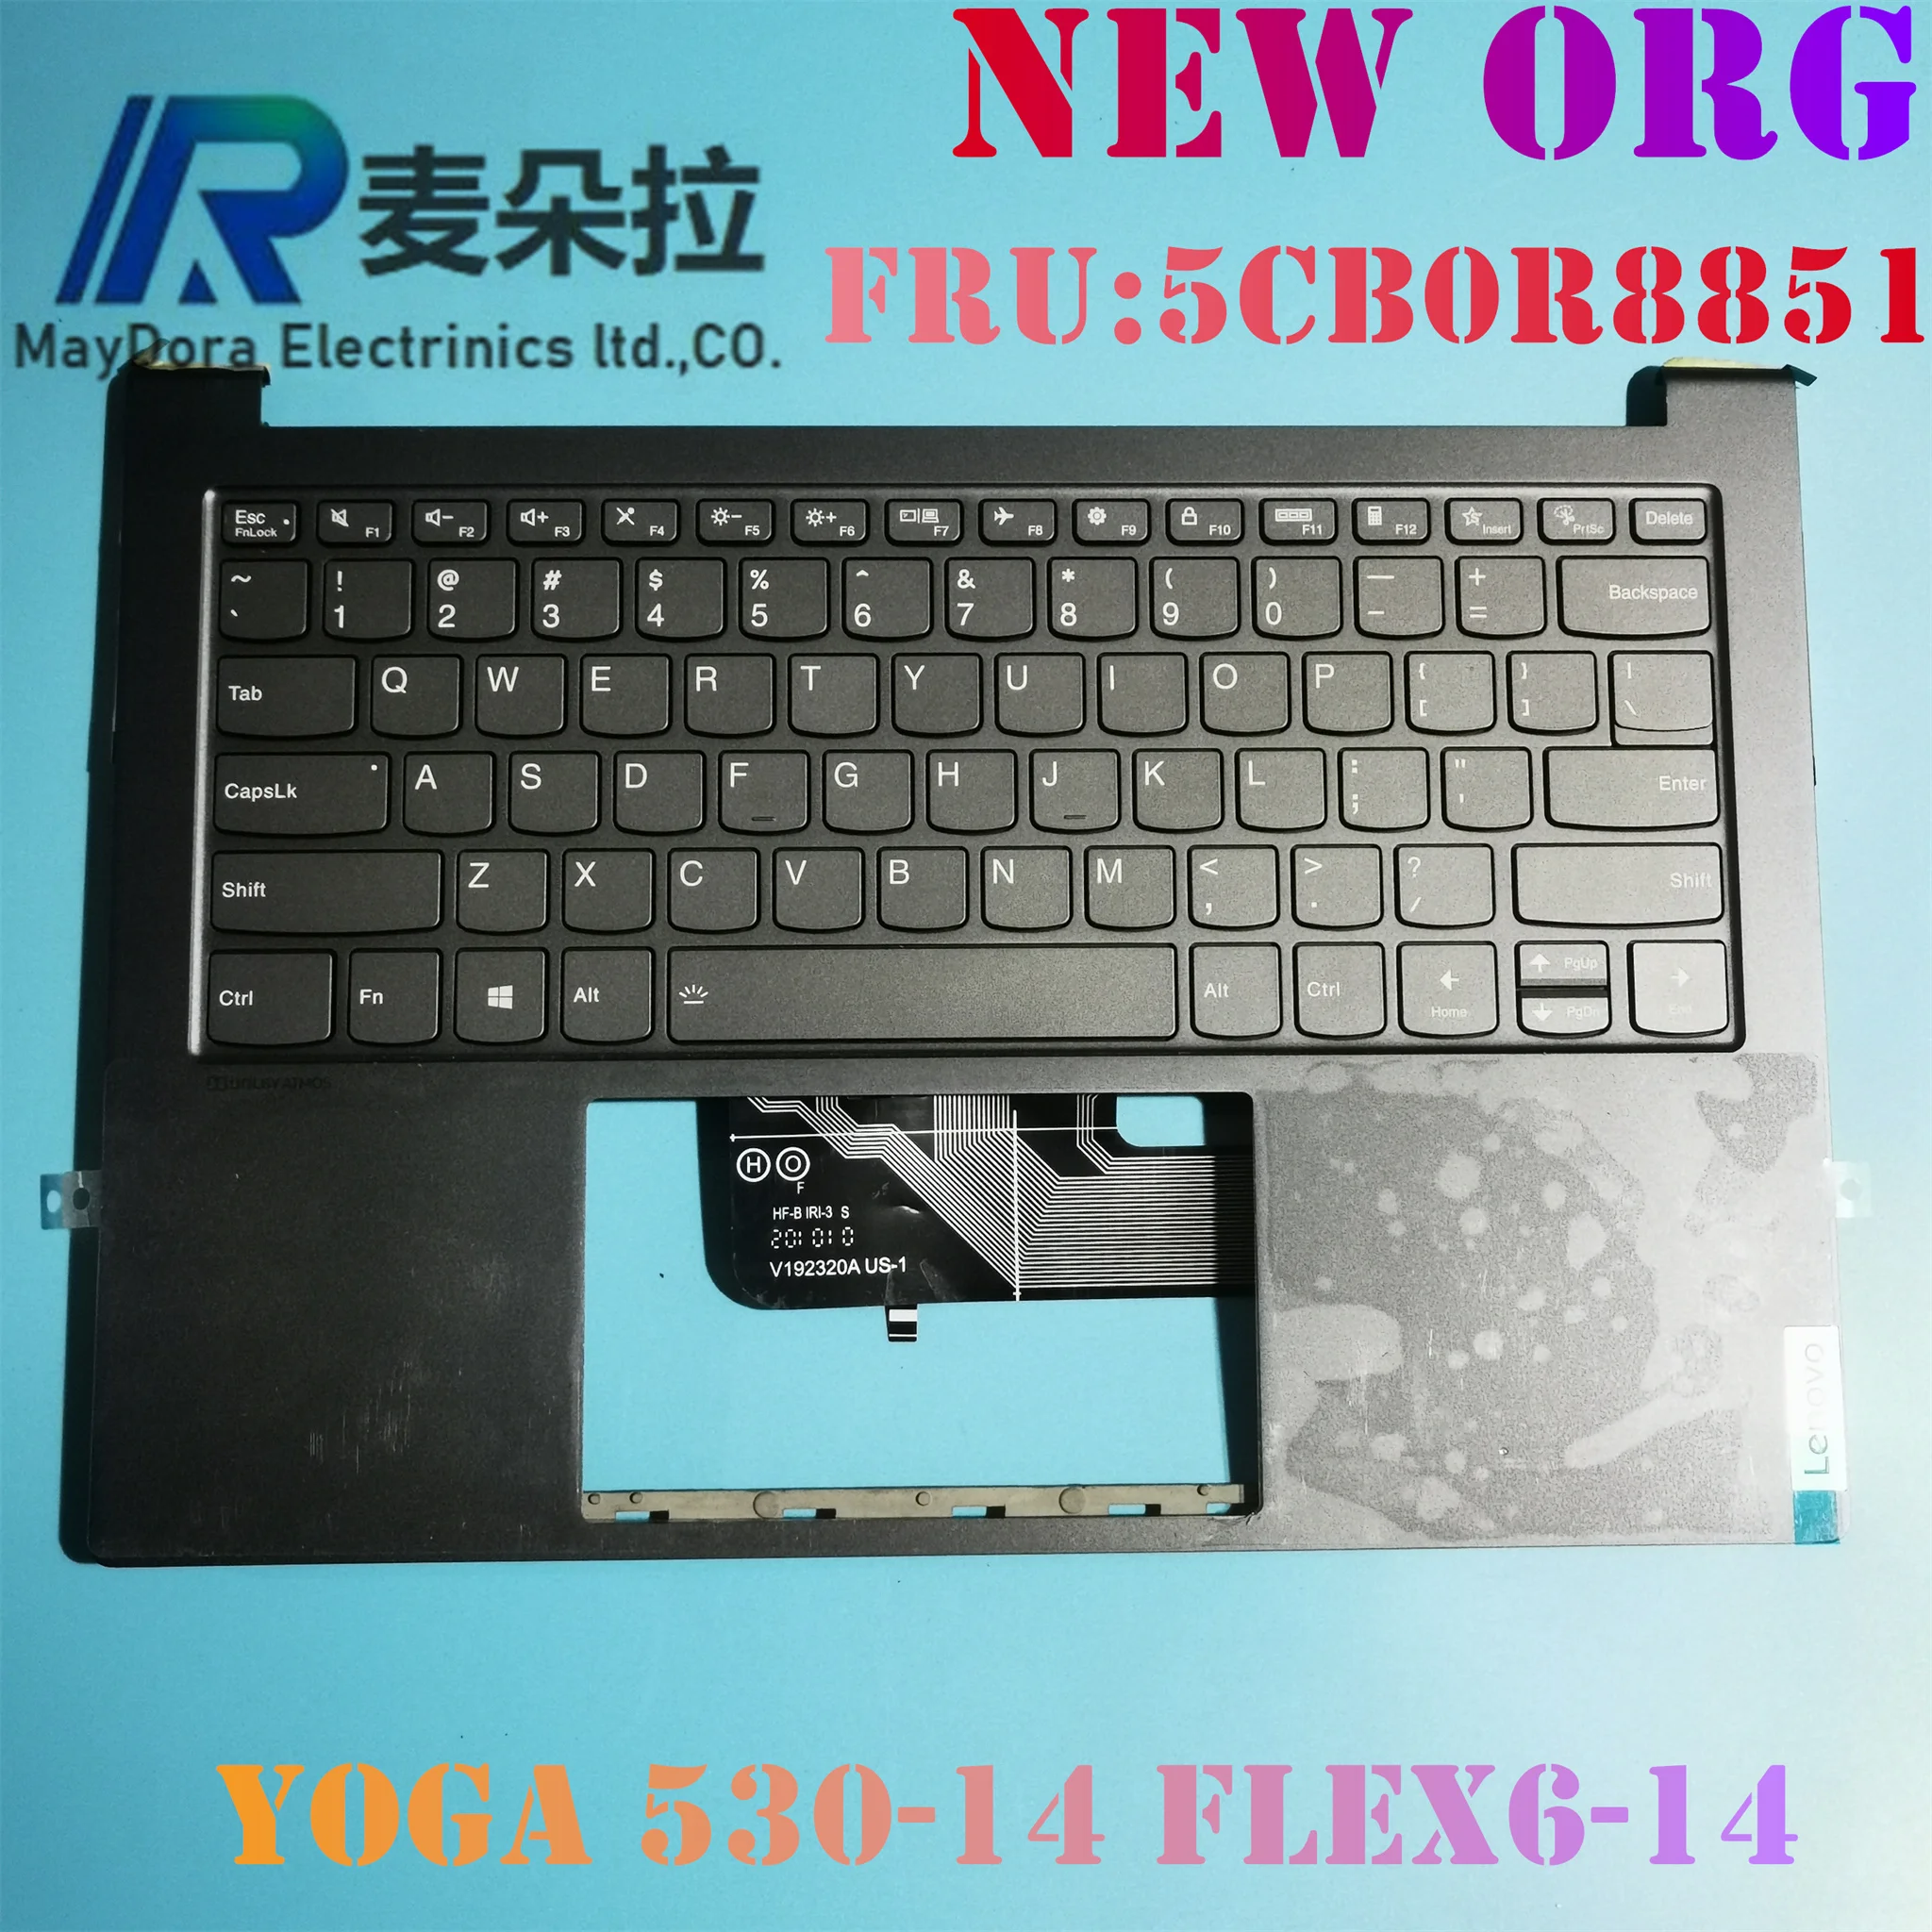 

NEW ORG US/IND English Backlight keyboard palmrest for LENOVO YOGA 530-14 ARR IKB FLEX6-14 1470 1480 GRAY w/ FP hole 5CB0R8851